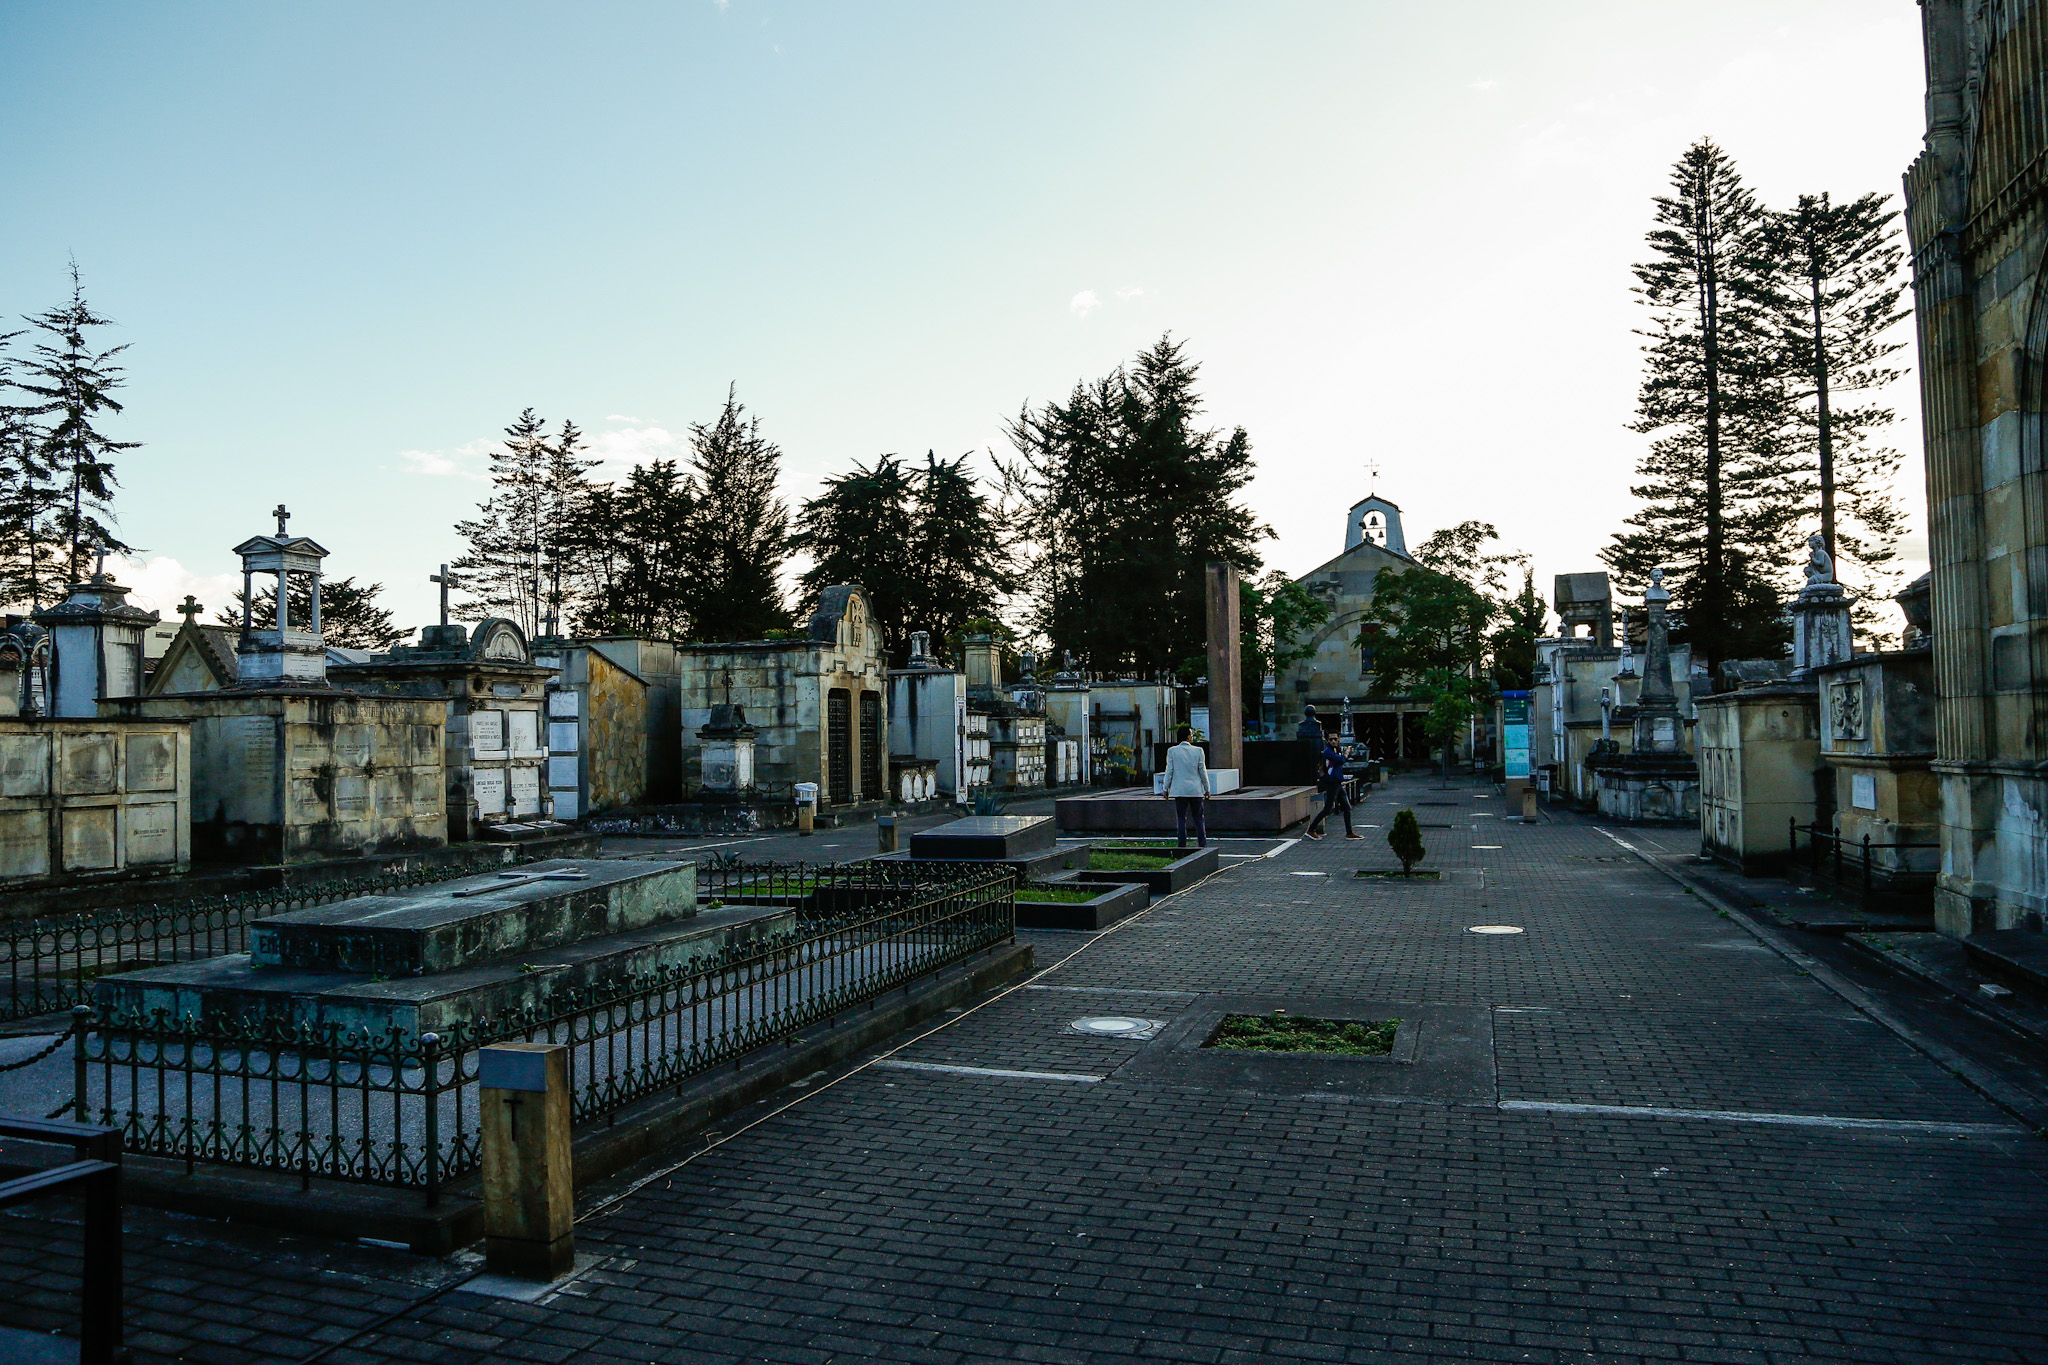 Imagen de la avenida principal del Cementerio Central de Bogotá donde reposan las tumbas de varios presidentes de Colombia. Foto: archivo fotográfico IDT - Fotógrafo Daniel Ruiz Vera